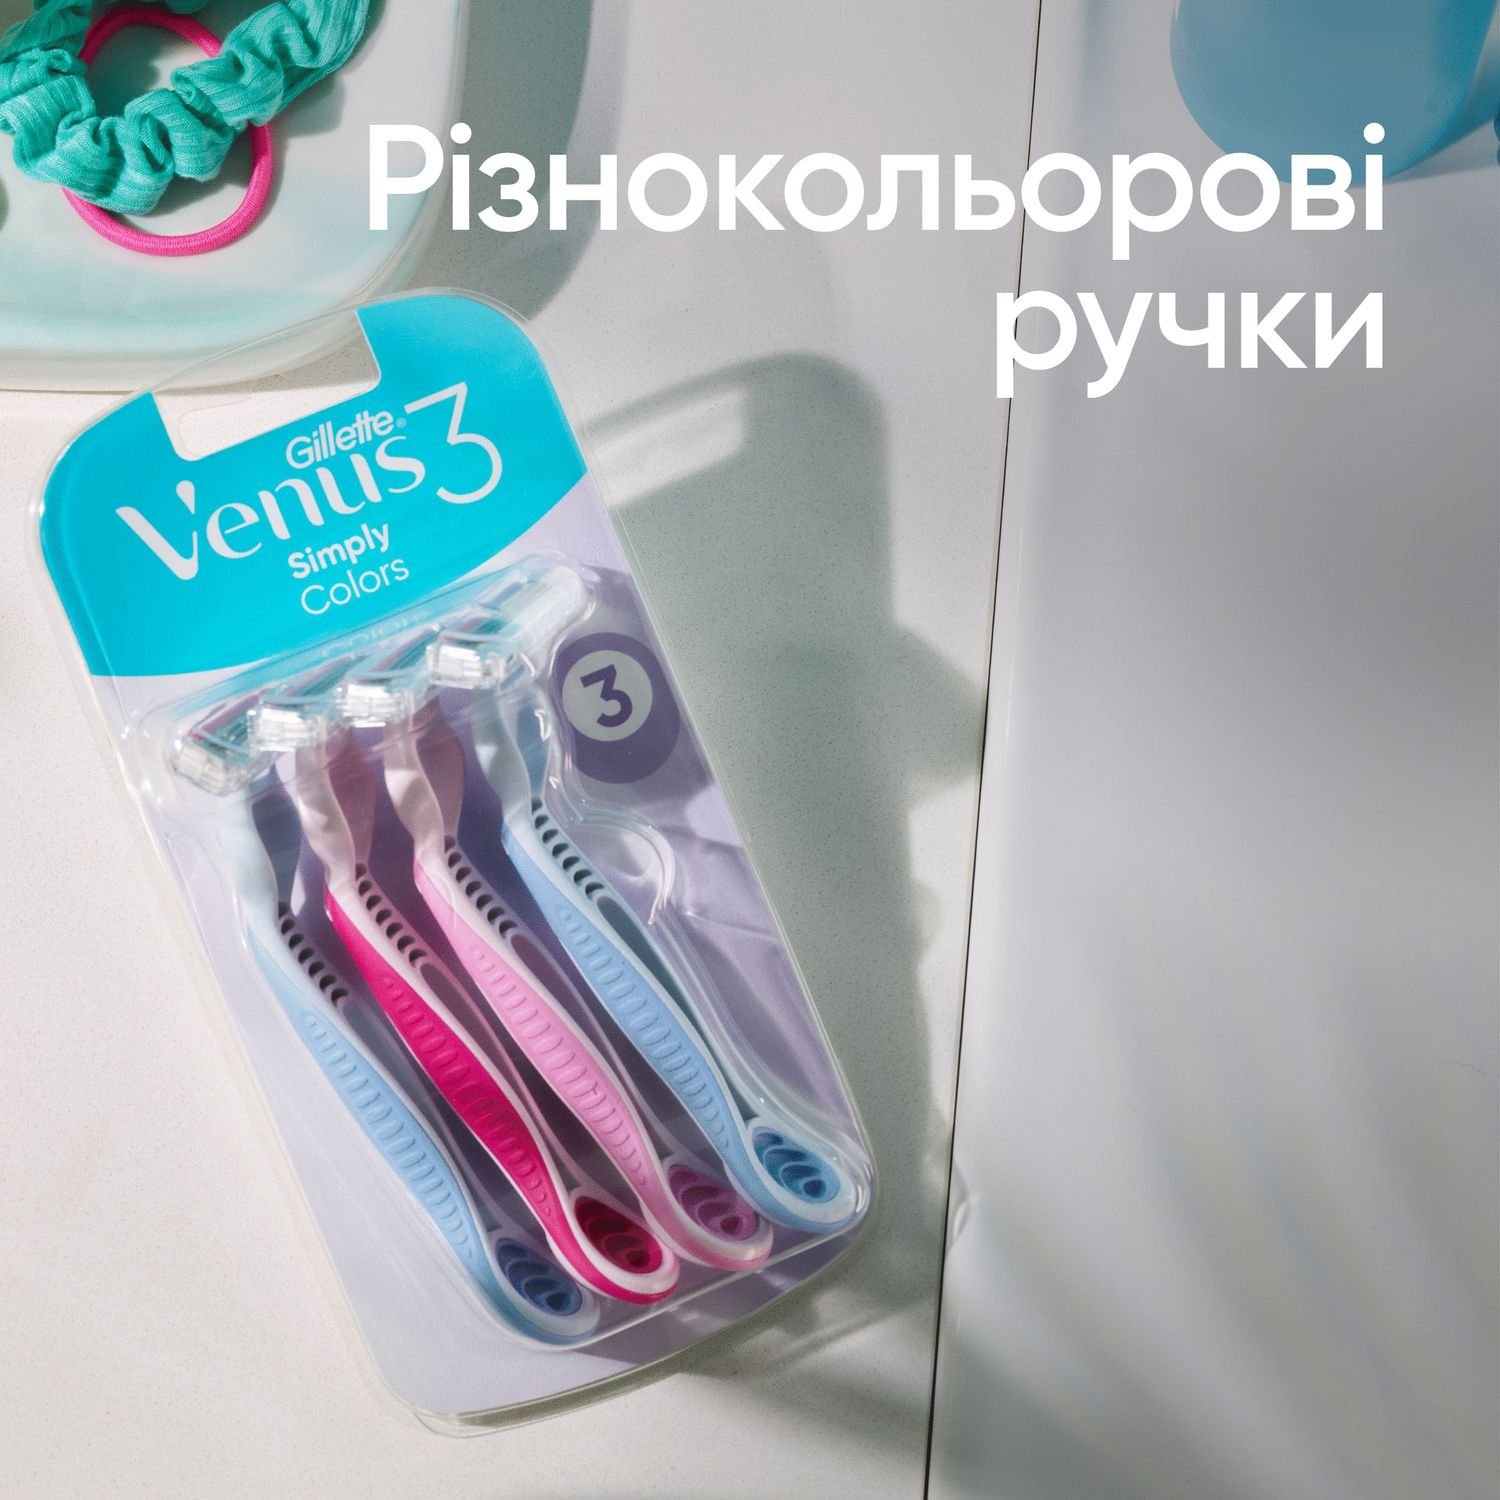 Одноразовые станки для бритья Gillette Venus 3 Colors, 3 шт. - фото 6